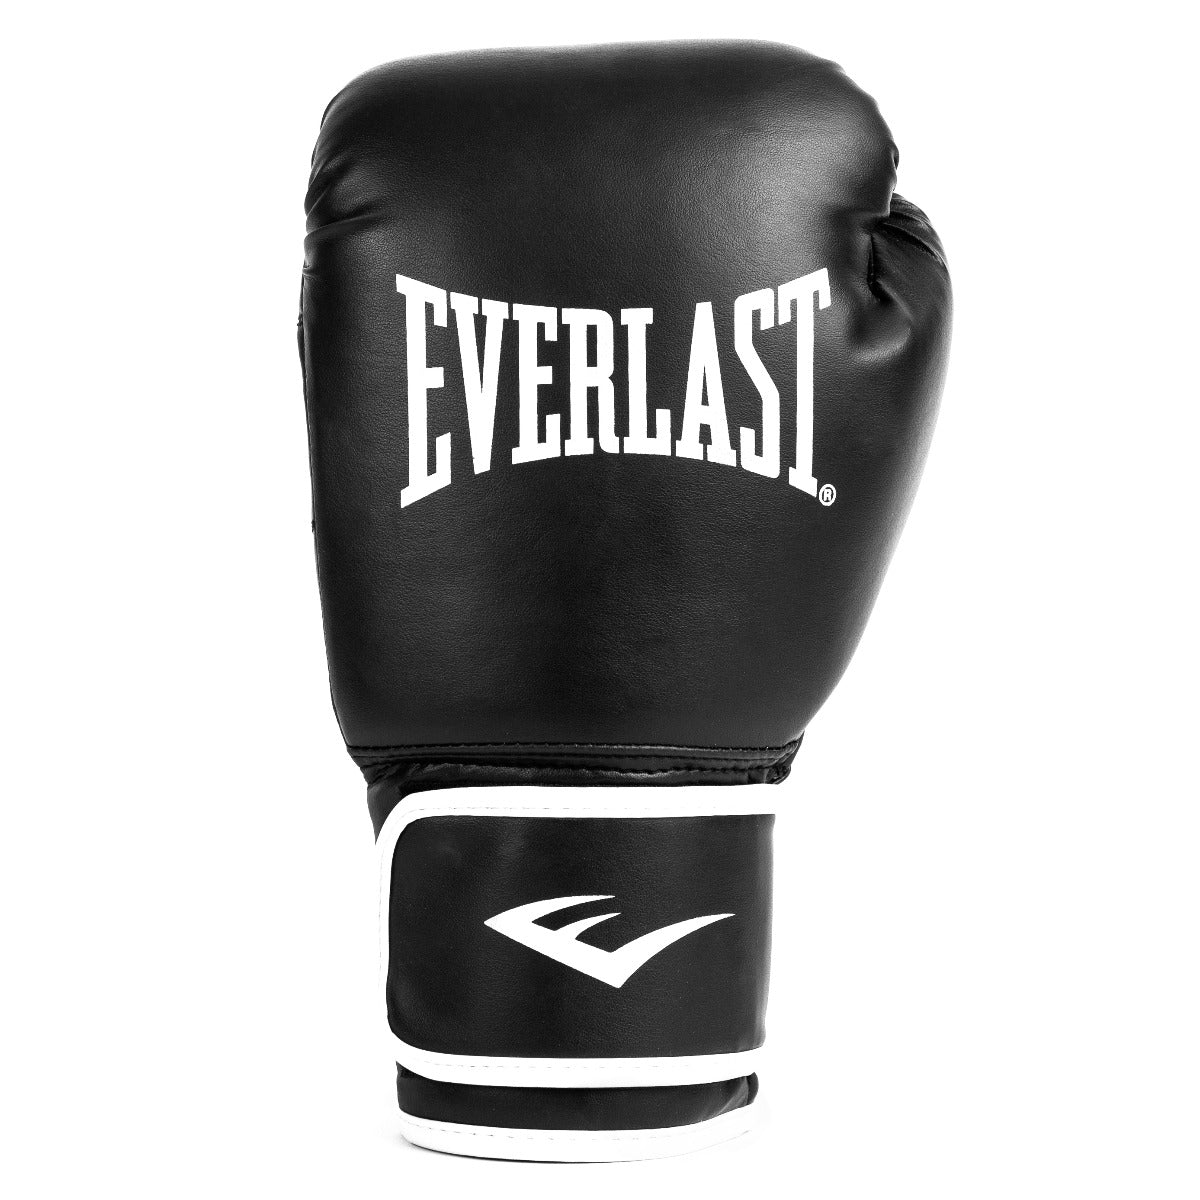 Core 2 Training Glove - Everlast